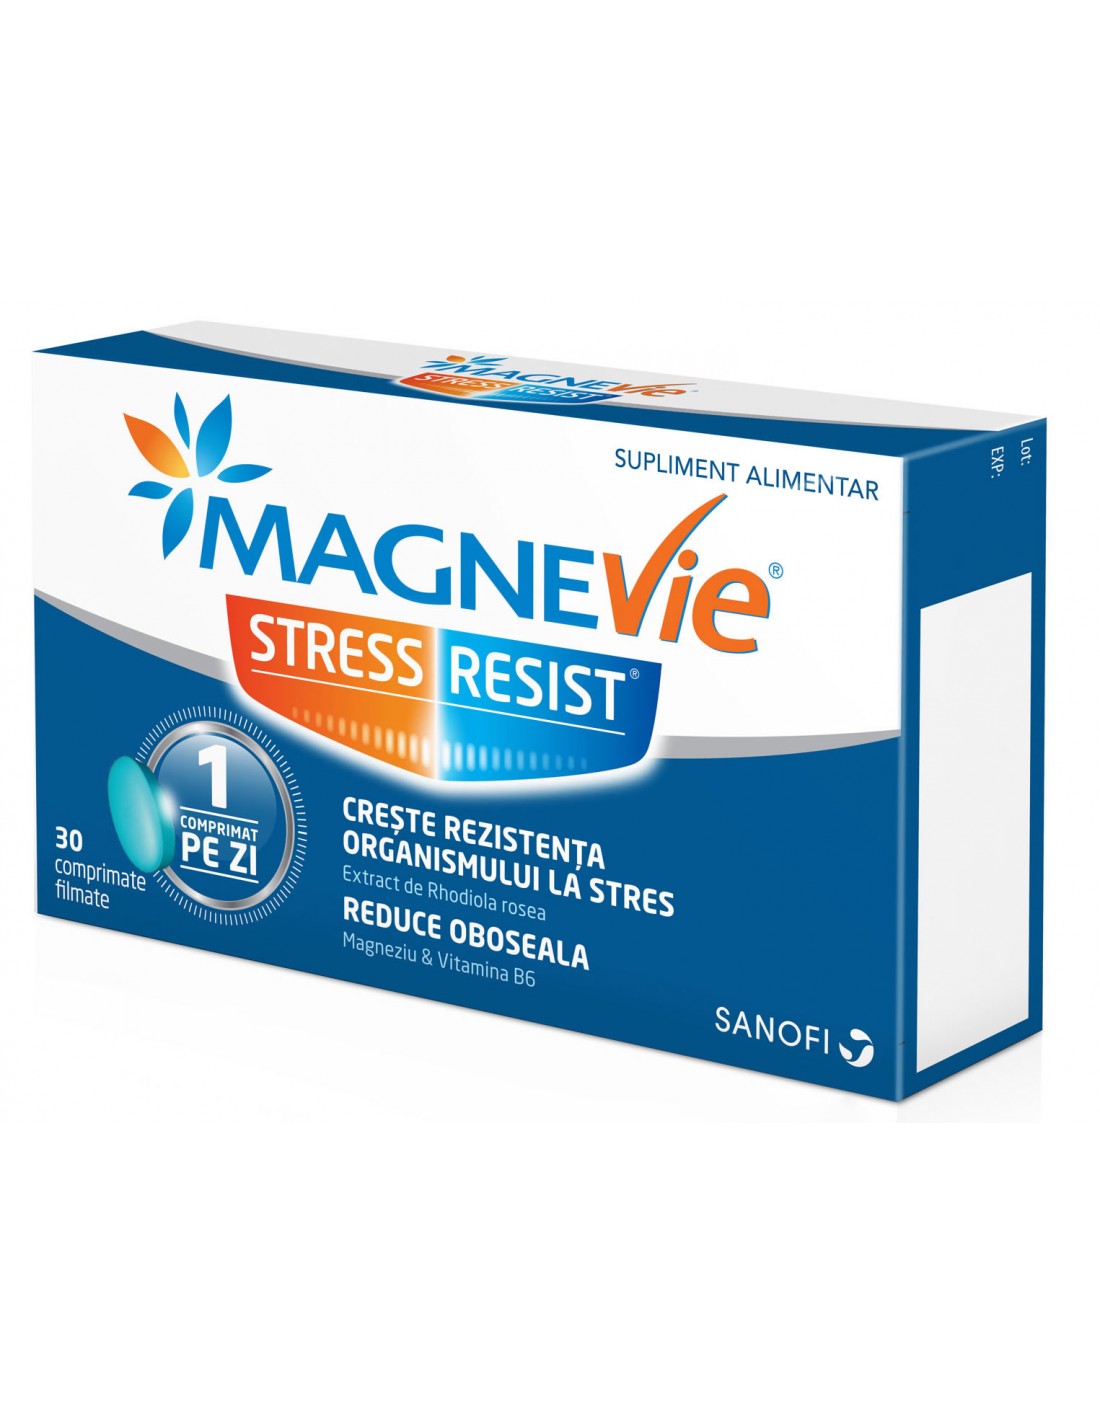 Uz general - MagneVie Stress Resist, 30 comprimate filmate, Sanofi, sinapis.ro